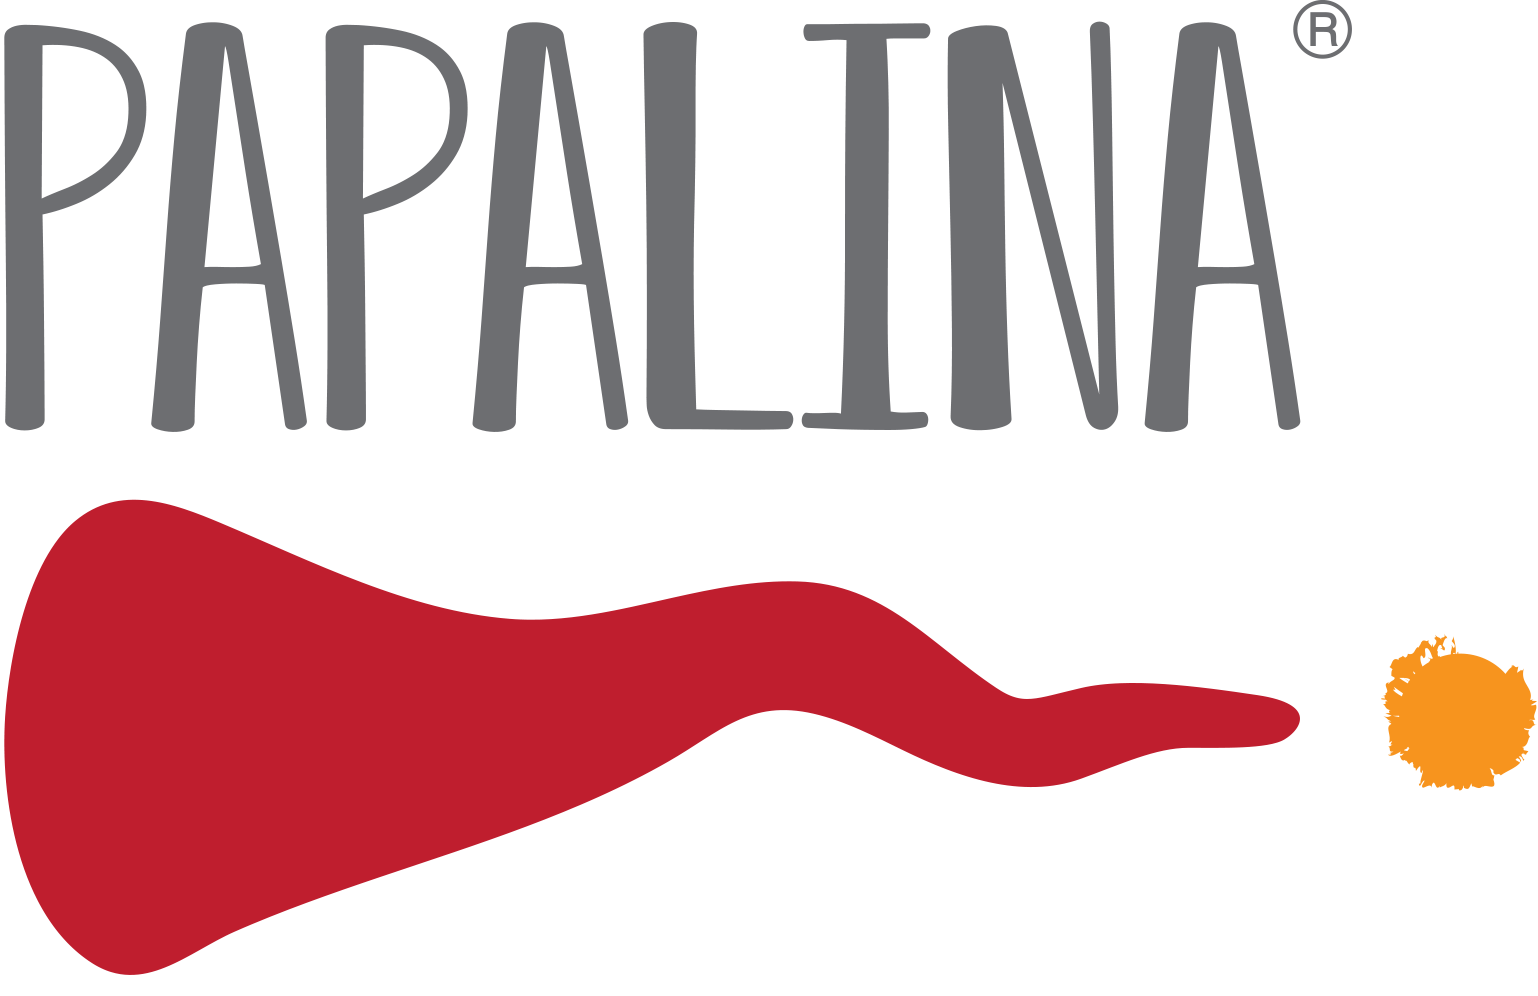 Papalina